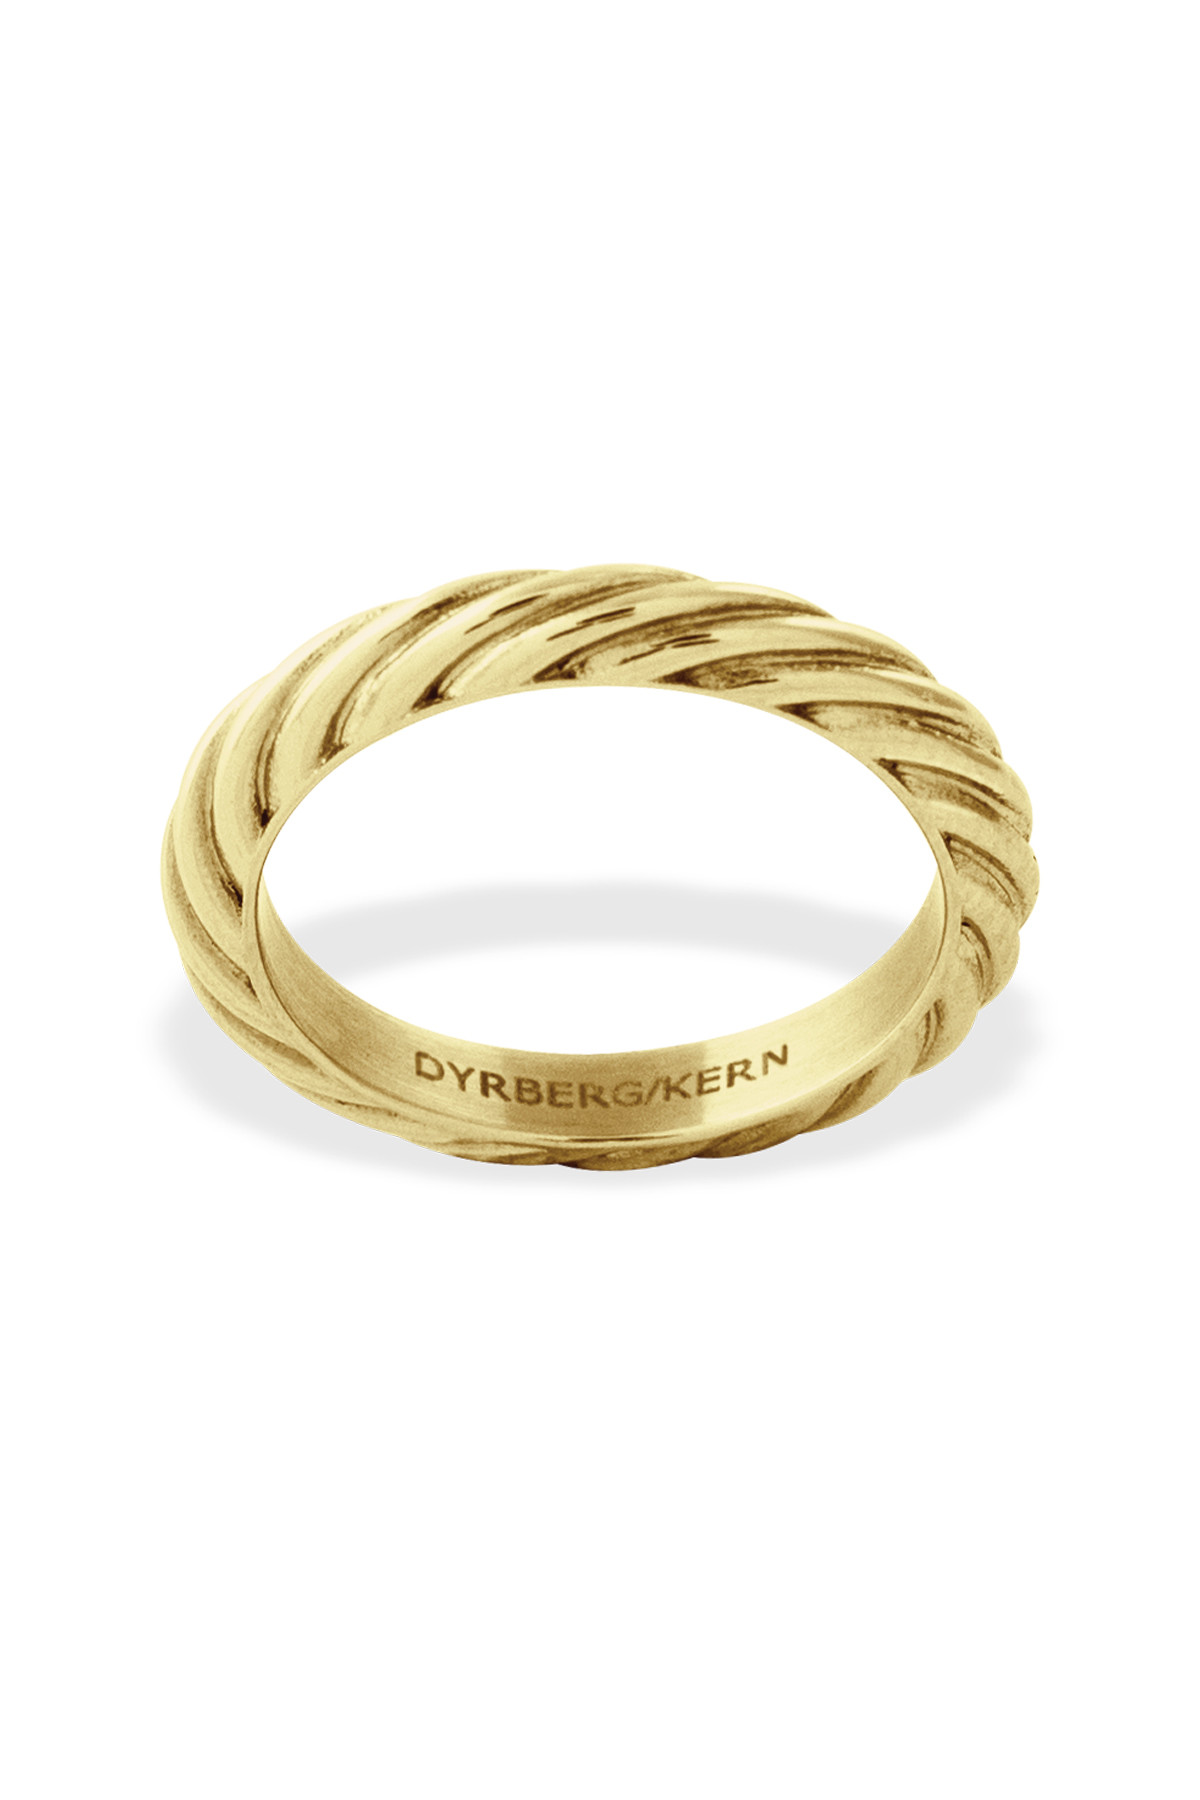 Dyrberg/Kern Spacer C Ring, Color: Gold, I/, Women